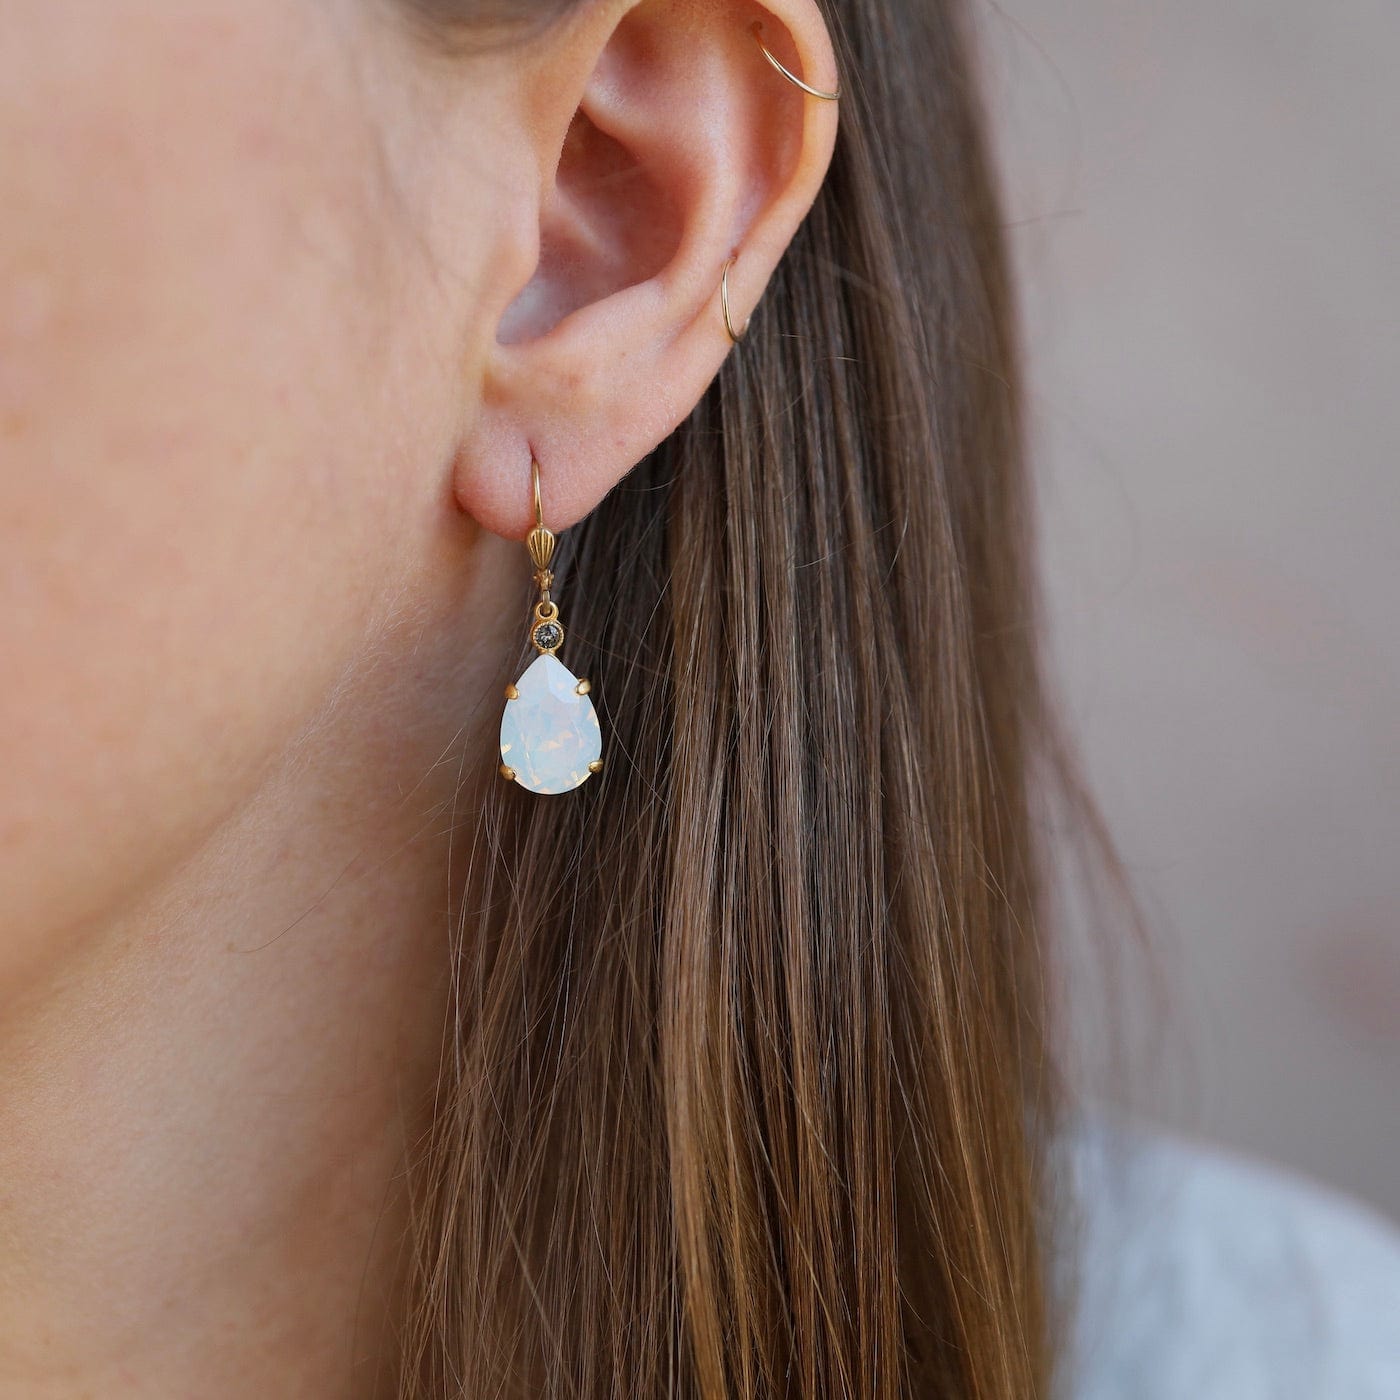 EAR-JM Teardrop Earring with White Opal Crystals